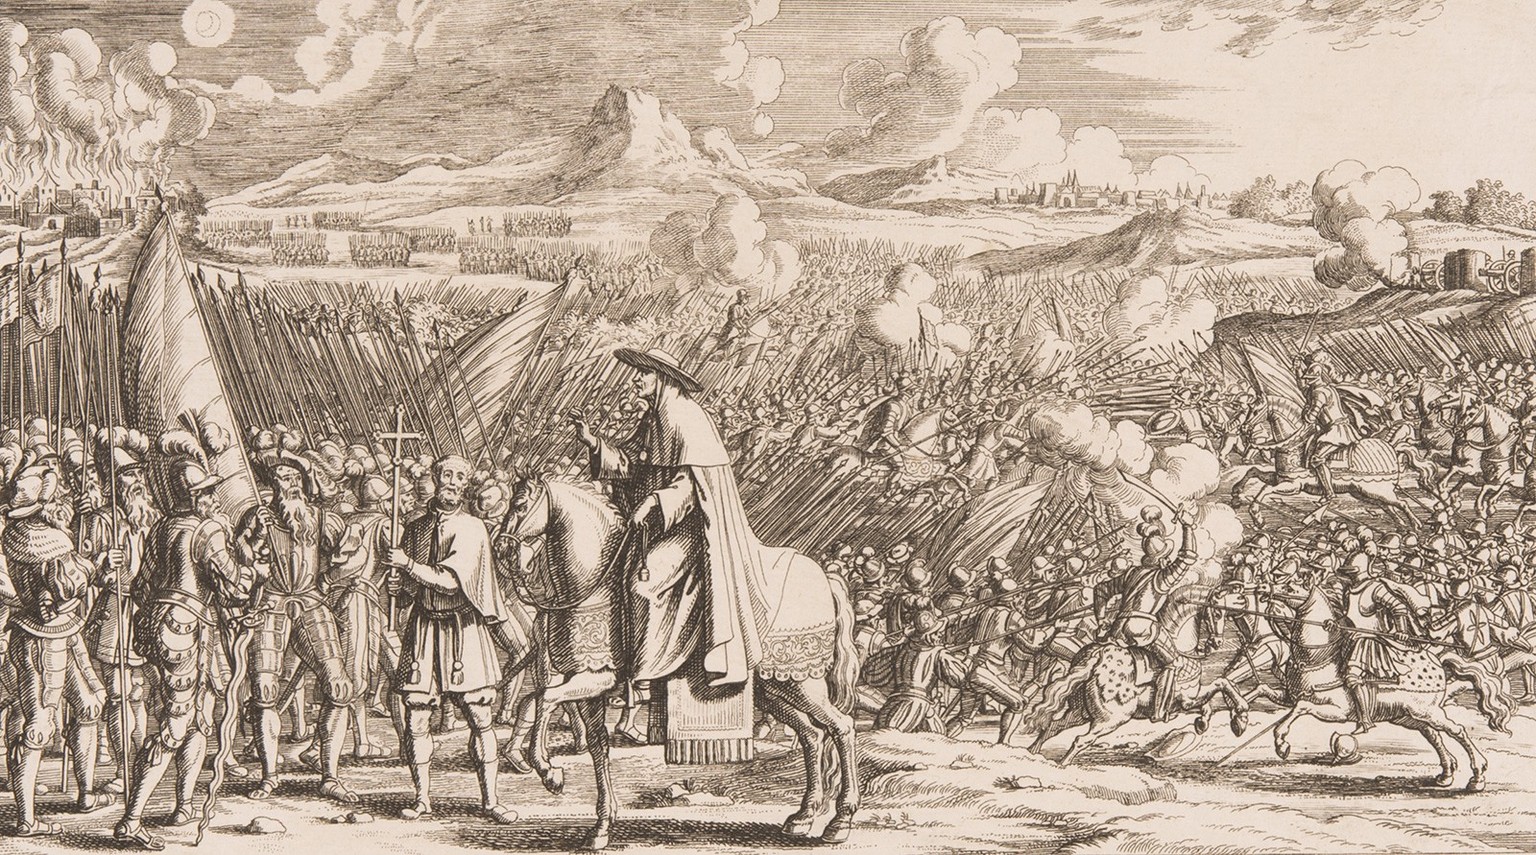 Mathieu Schiner sur le champ de bataille de Marignan en 1515. Gravure de Johann Melchior Füssli, 1713.
https://permalink.nationalmuseum.ch/100100309